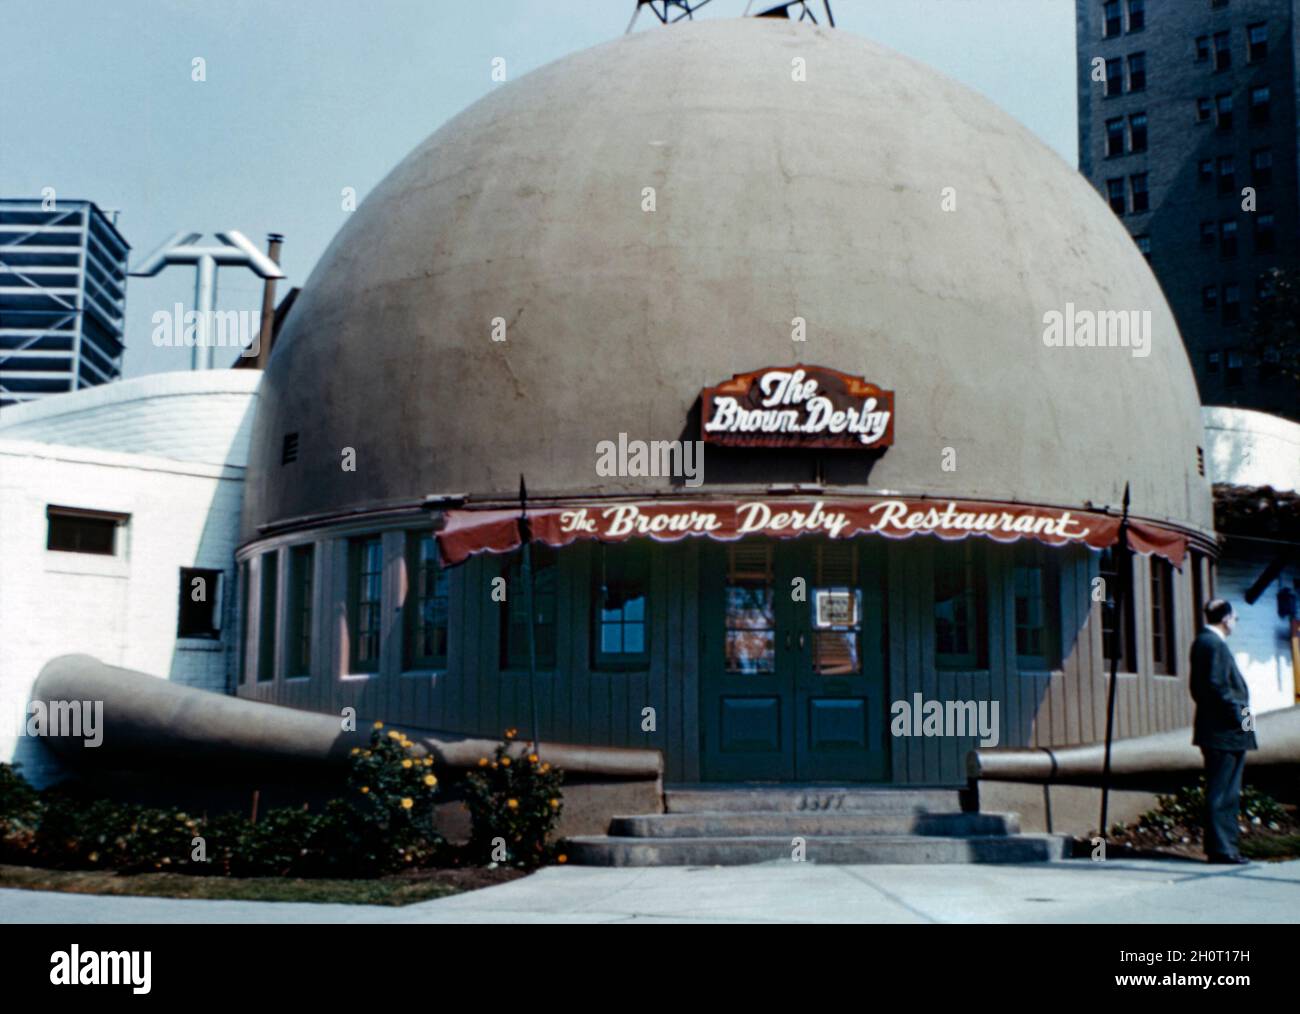 Il ristorante originale Brown Derby al 3427 Wilshire Boulevard, Los Angeles, California, USA negli anni '50. La prima e più conosciuta di un'eventuale catena di ristoranti fu conformata come un cappello da derby dell'uomo, un'immagine iconica che divenne sinonimo dell'Età dell'Oro di Hollywood. Fu aperto da Wilson Mizner nel 1926. I ristoranti sono chiusi negli anni '80, ma un programma di franchising nazionale Brown Derby sostenuto da Disney ha rilanciato il marchio nel XXI secolo – una fotografia d'epoca degli anni '50. Foto Stock